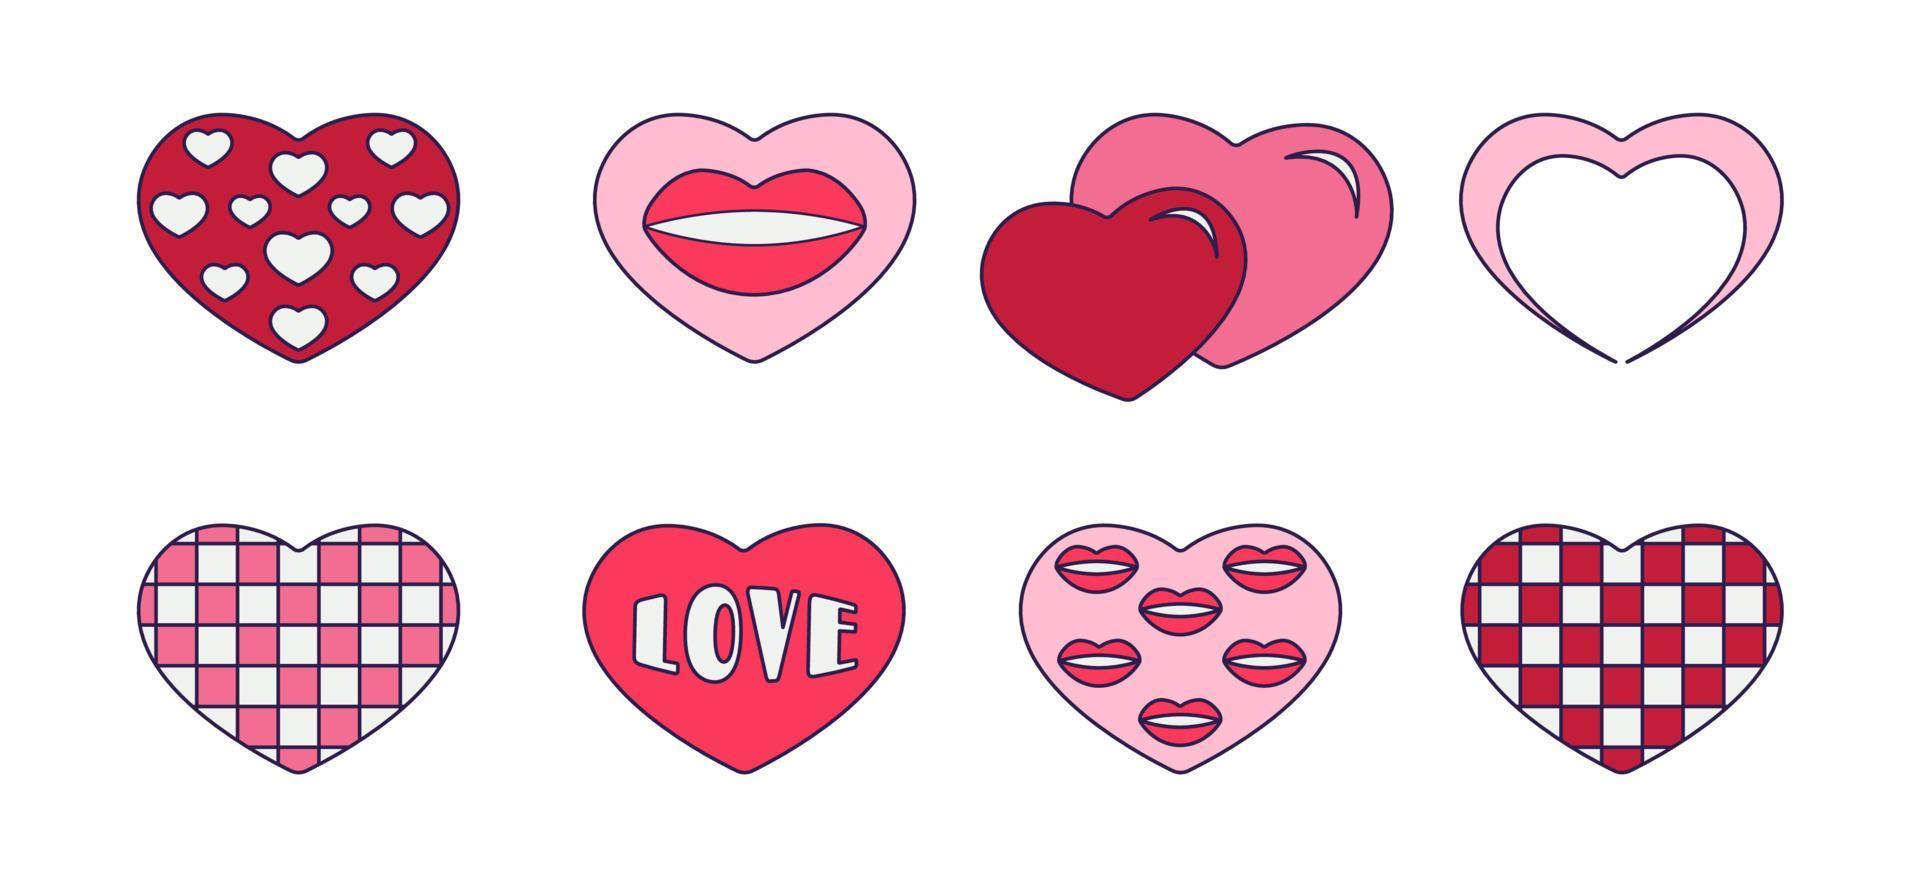 día de san valentín retro conjunto de iconos de corazón. símbolos de amor en el estilo de arte pop de moda. la forma de diferentes corazones en color rosa suave, coral y rojo. ilustración vectorial aislado en blanco. vector